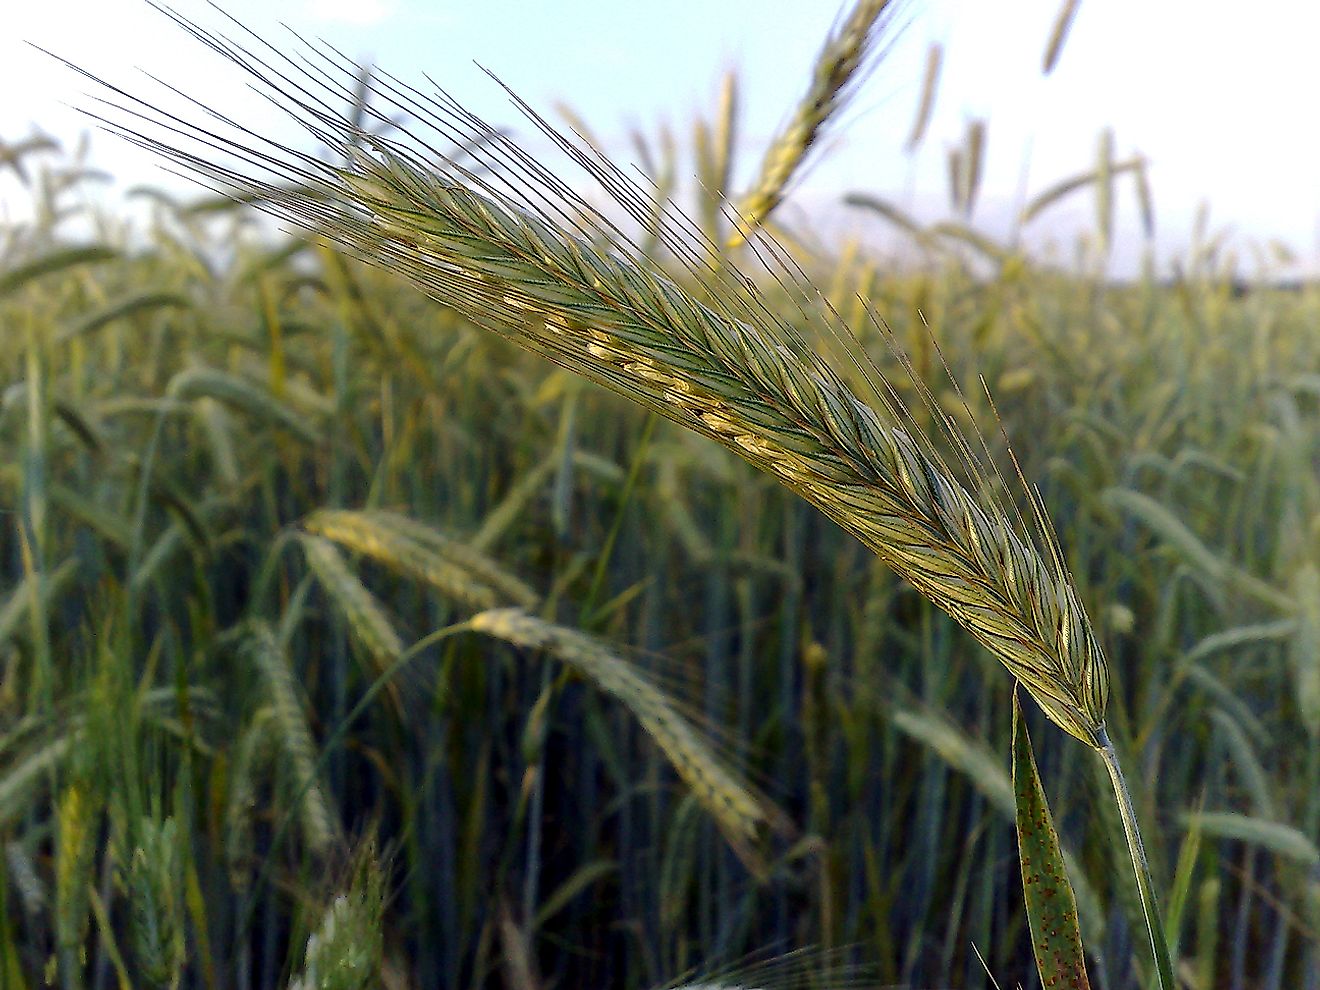 An ear of rye in a crop field.